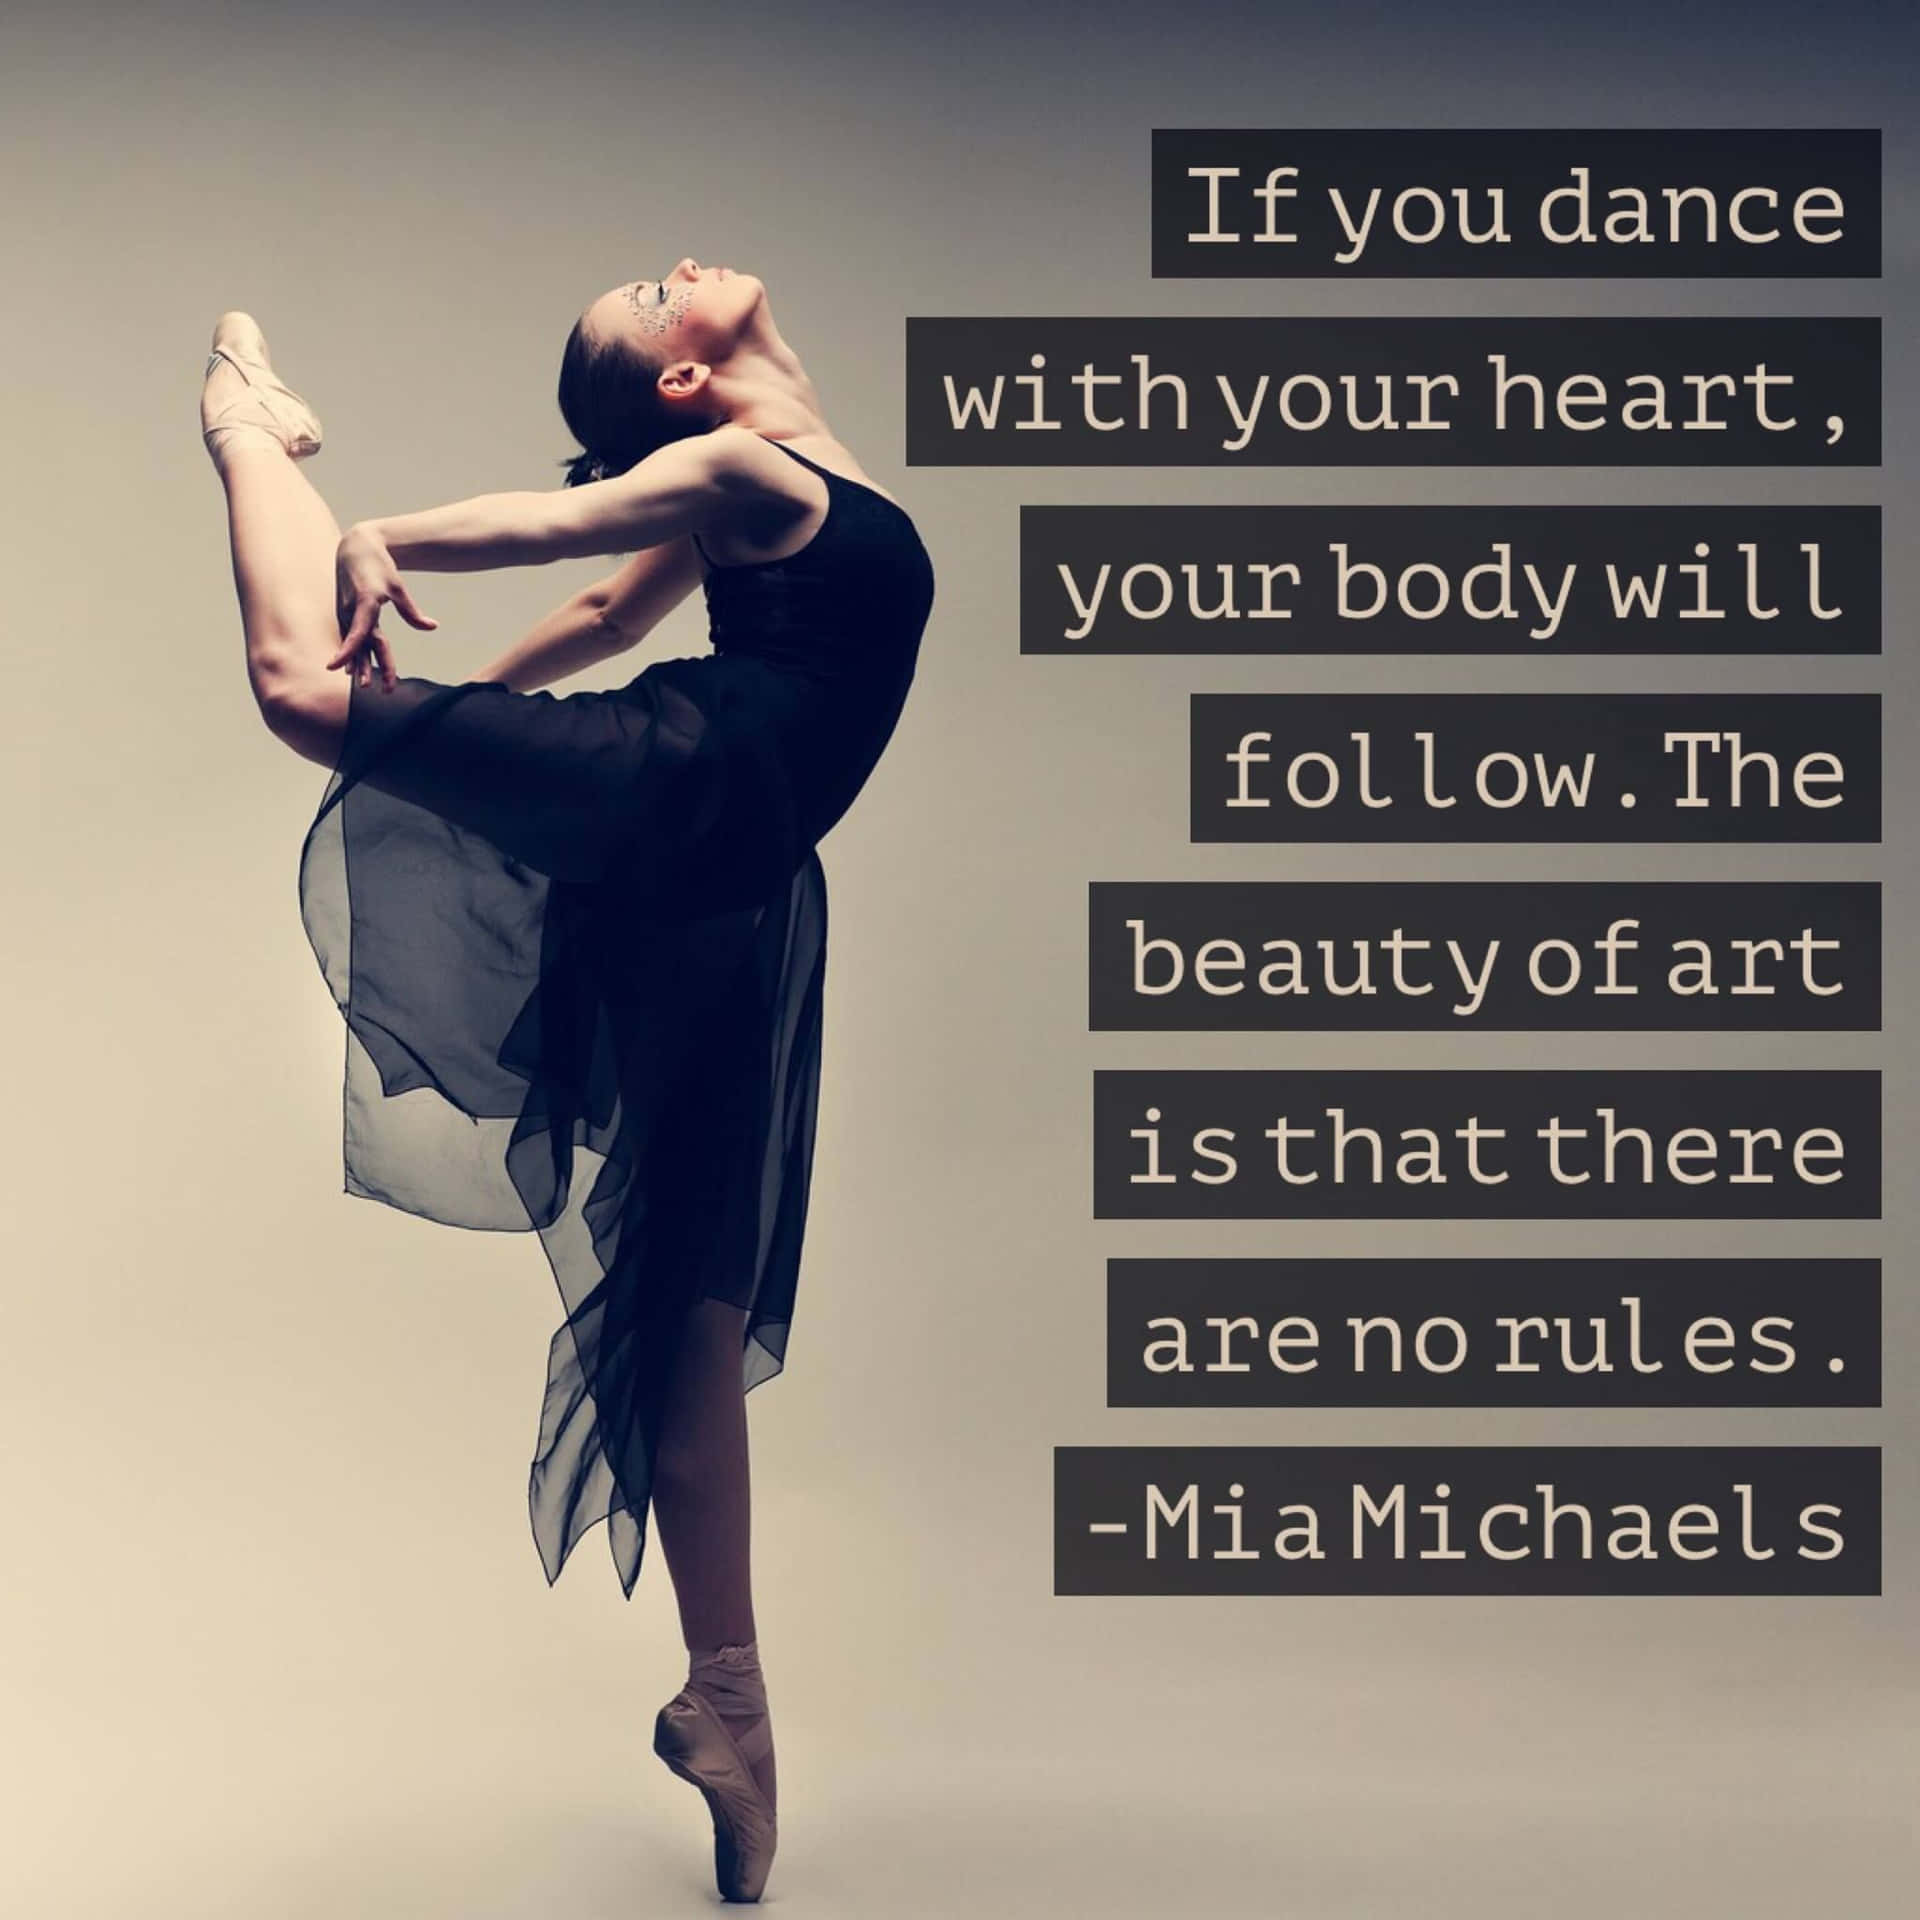 Einefrau Tanzt Mit Ihrem Herzen Und Sagt, Wenn Du Mit Deinem Herzen Tanzt, Wirst Du Deinem Herzen Folgen.